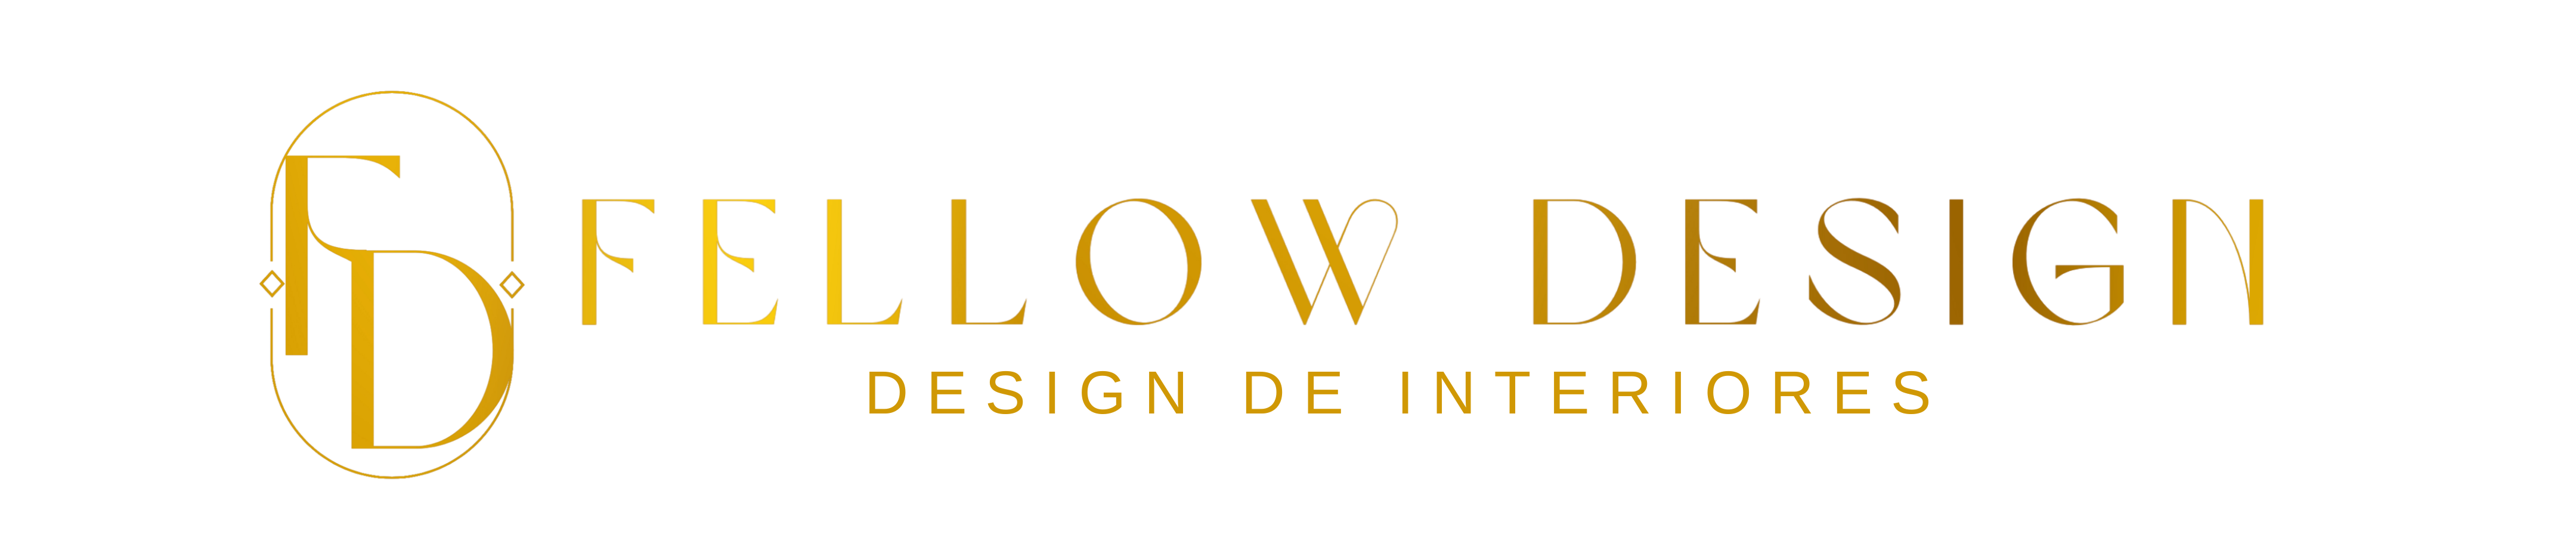 Logo Fellow Design